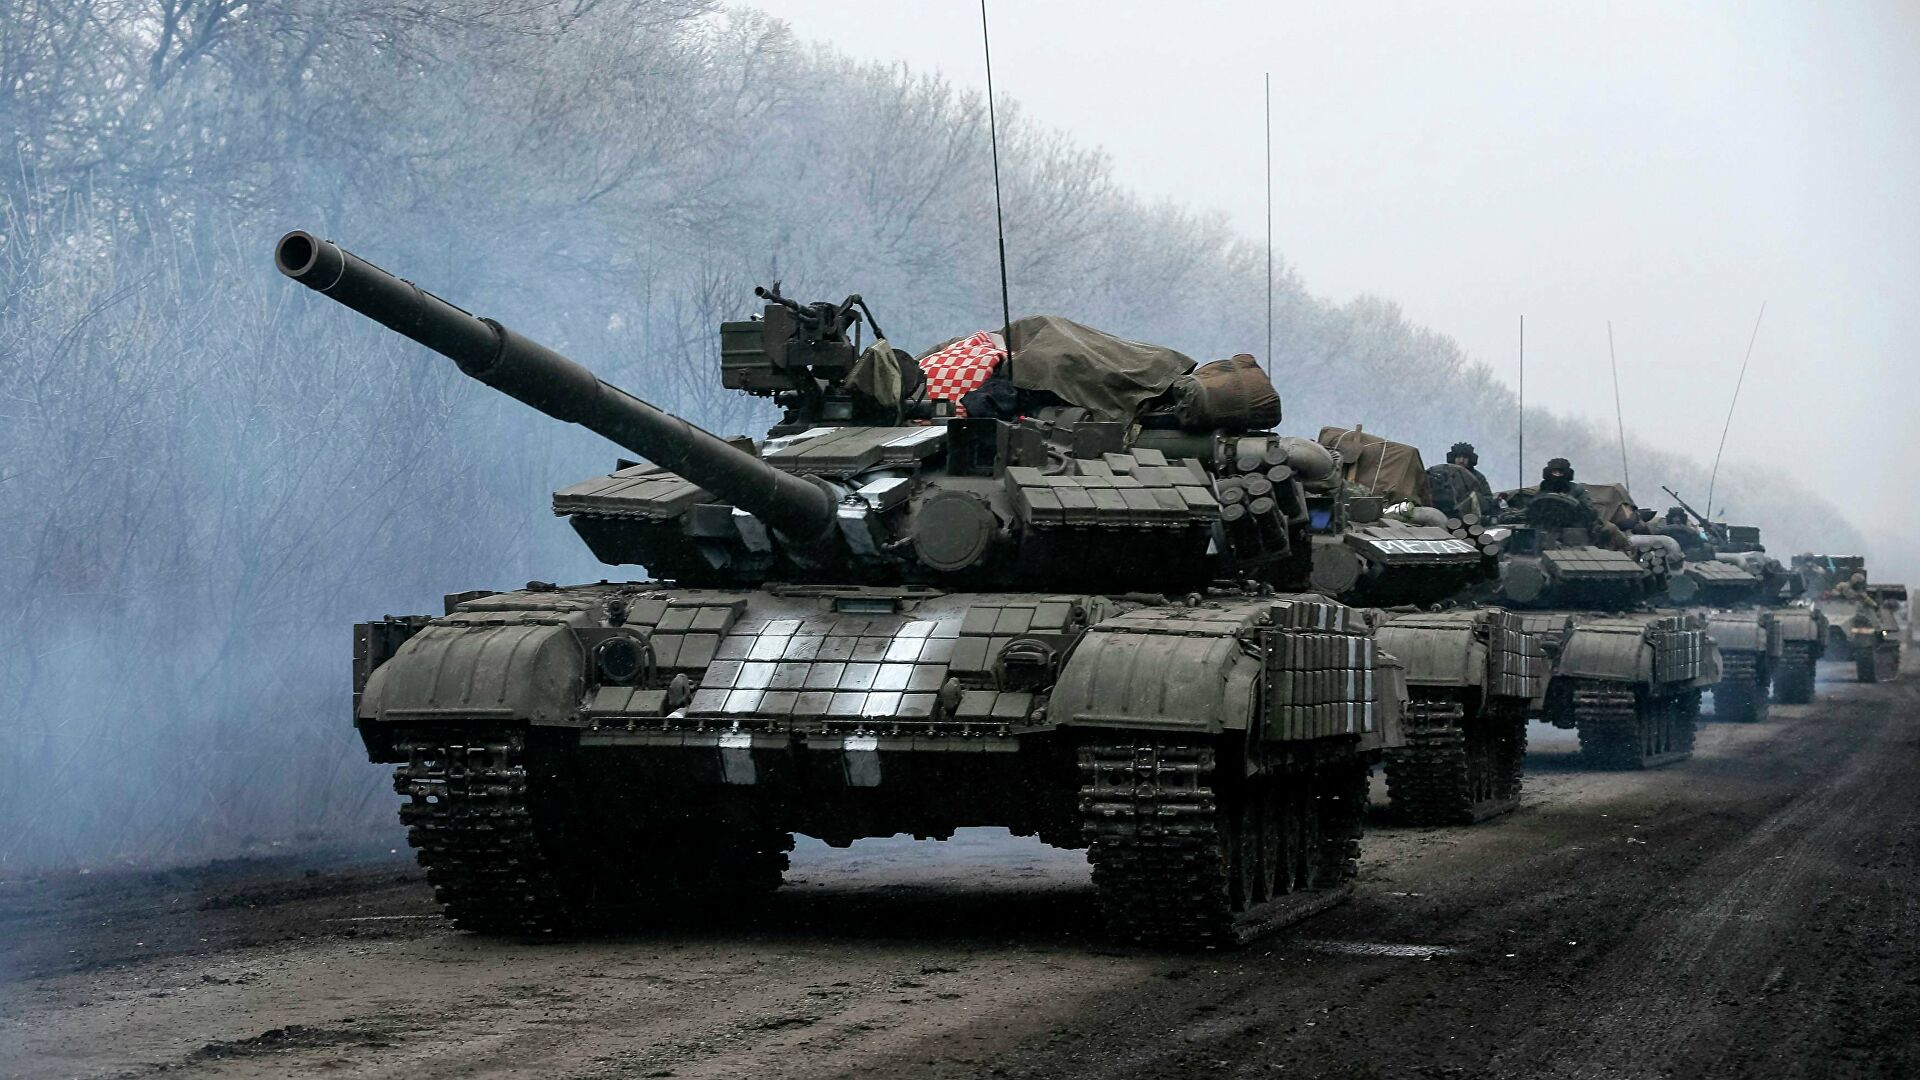 بالفيديو: لحظة دخول الدبابات الروسية إلى أوكرانيا عبر المعبر الحدودي مع بيلا روسيا